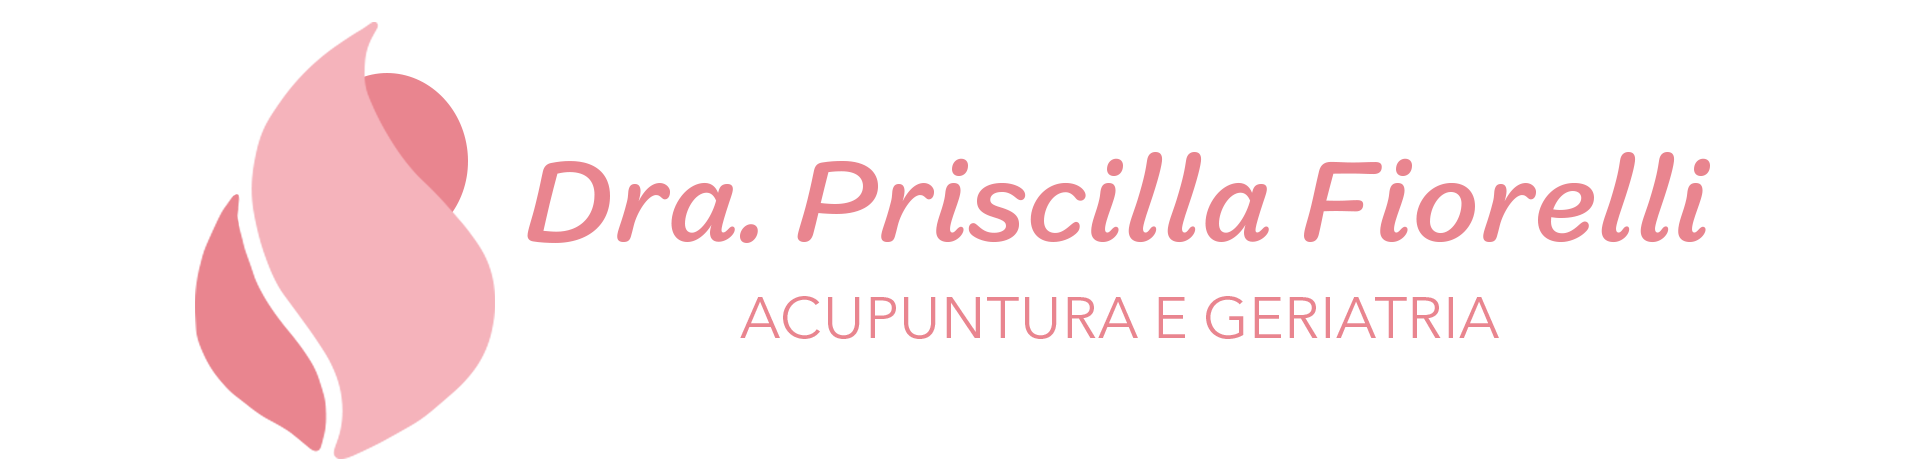 Dra. Priscilla Fiorelli